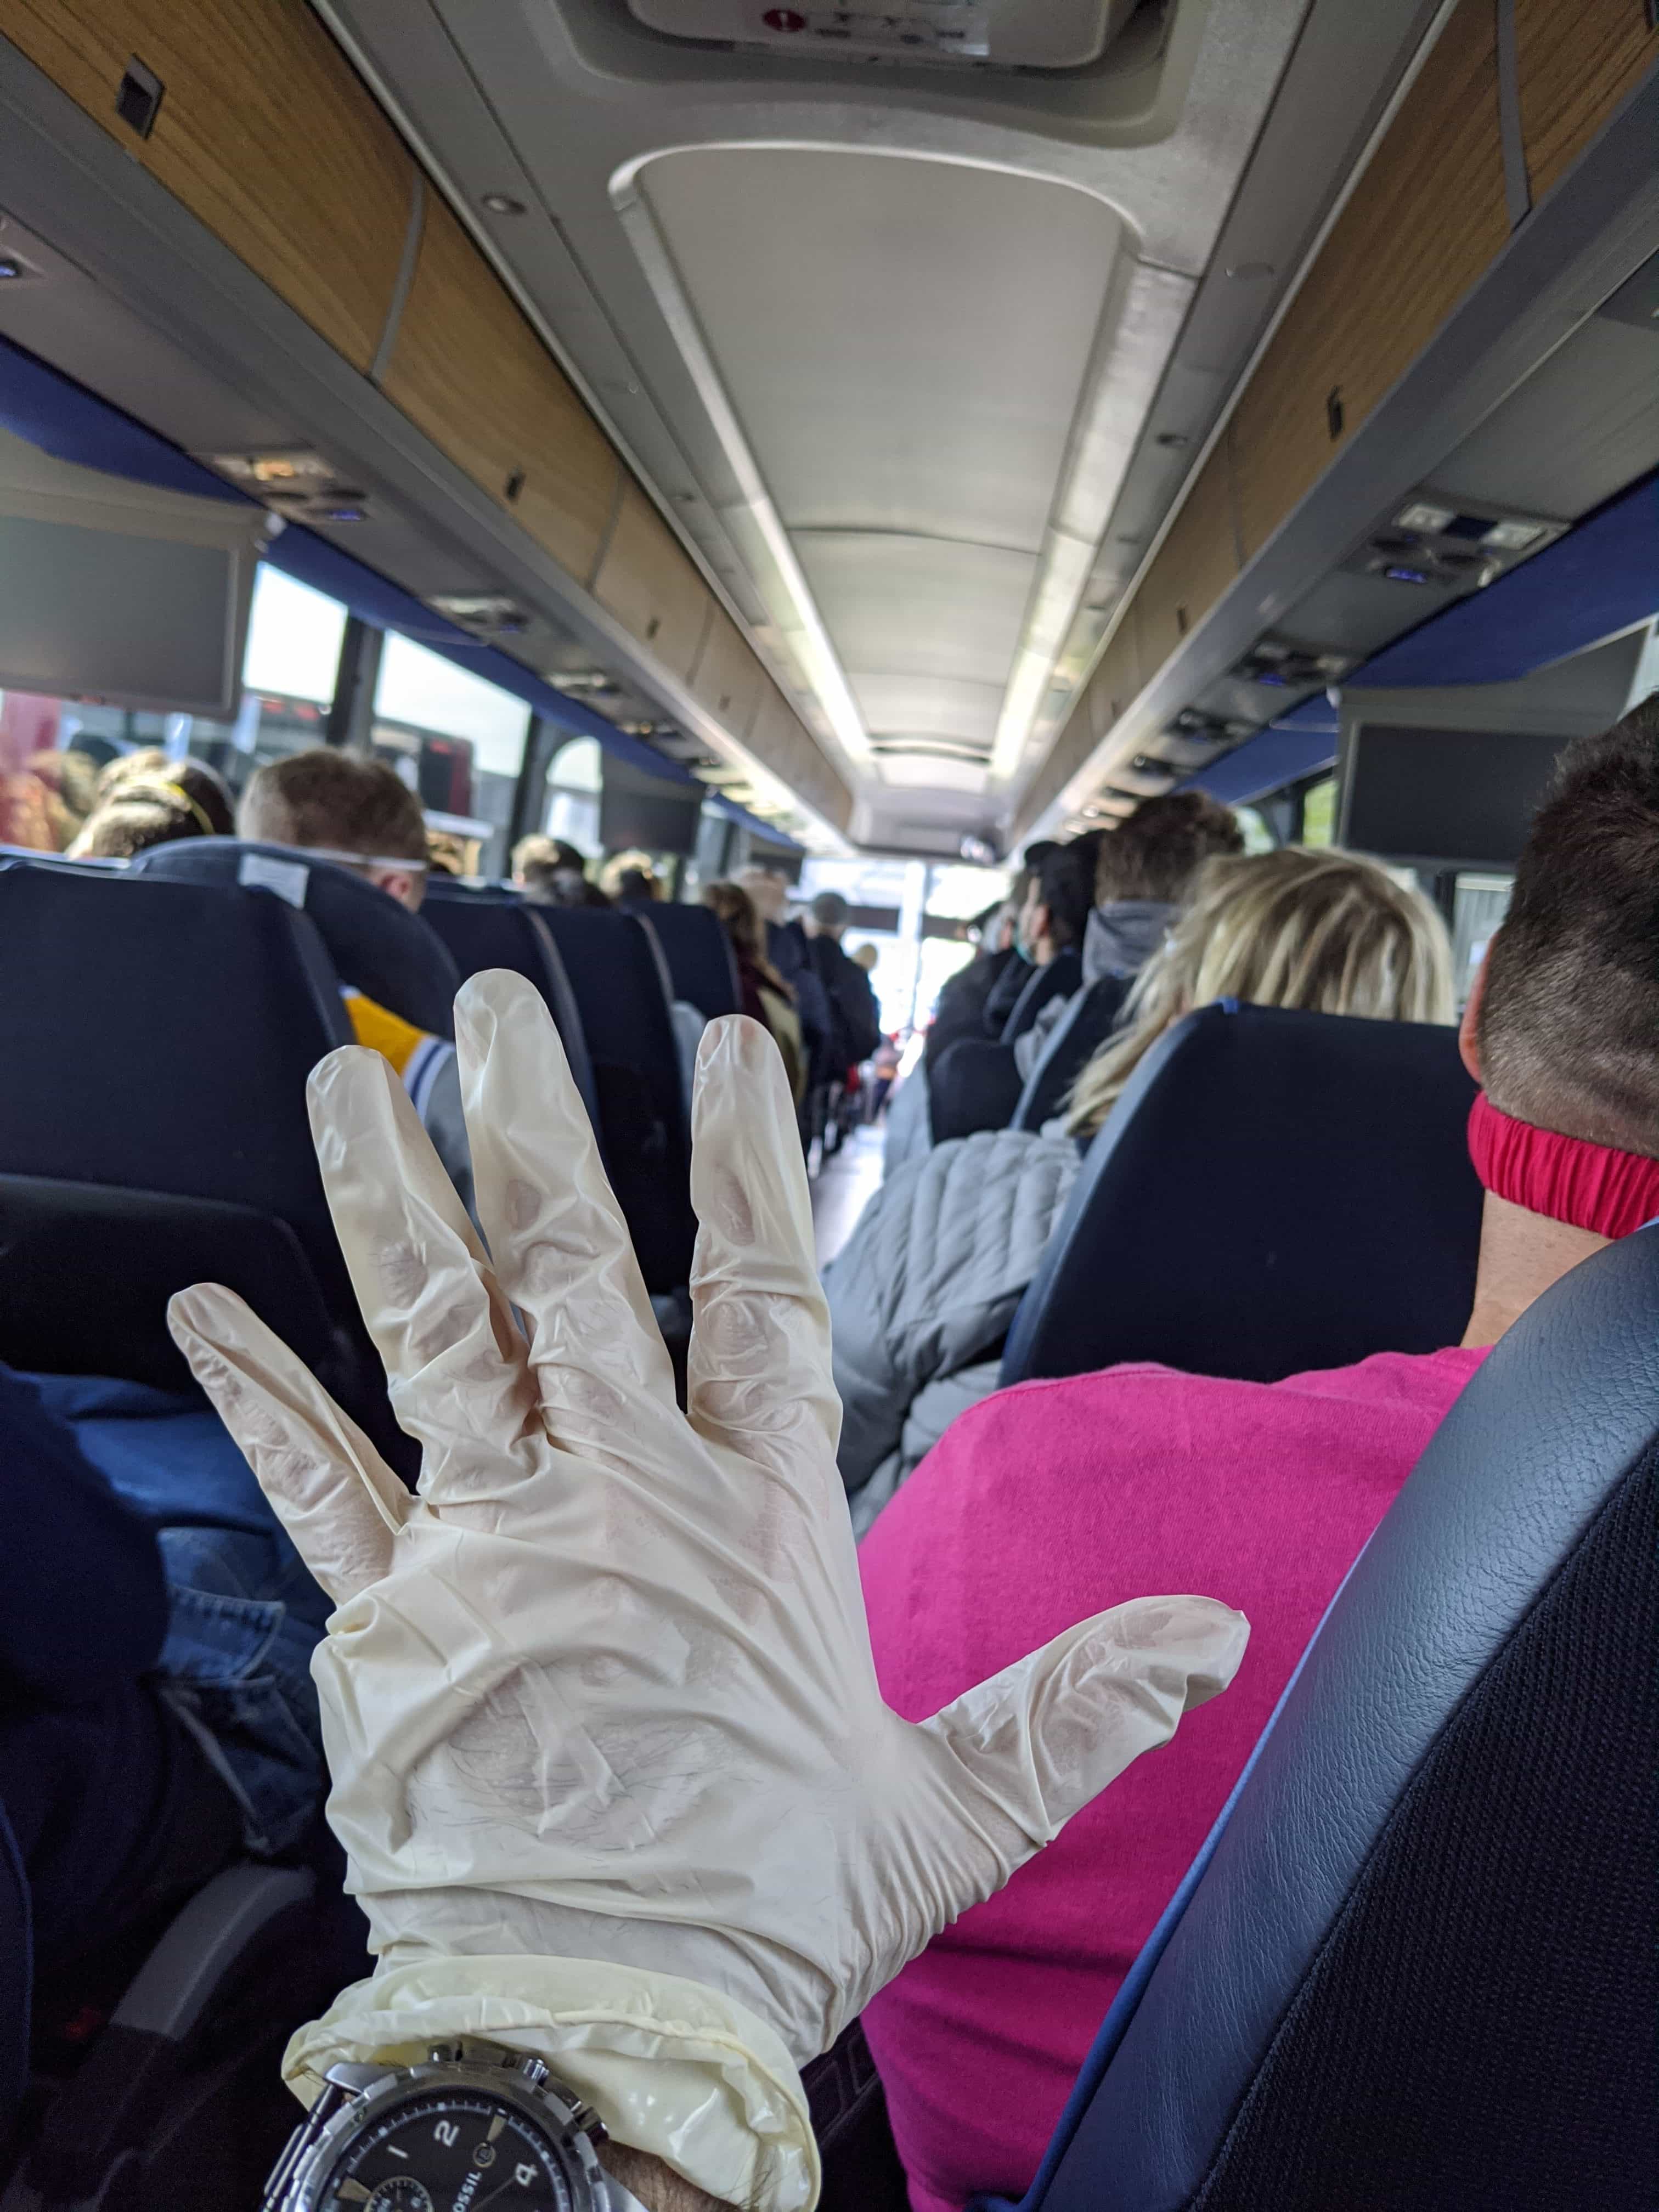 Gumená rukavica na ruke, pohľad do vnútra lietadla